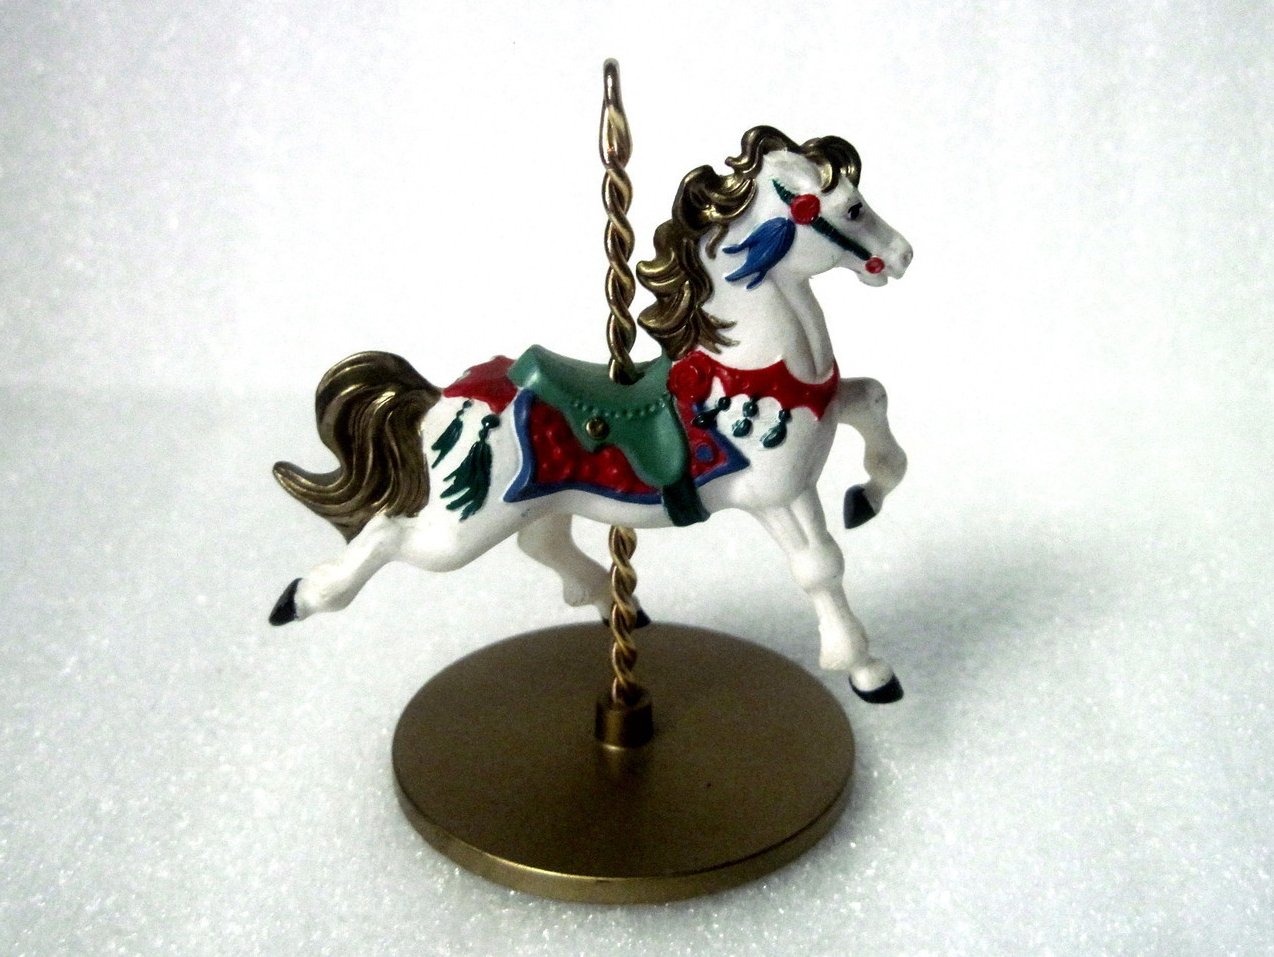 Snow Christmas Carousel Horse Series 1989 Hallmark Ornament